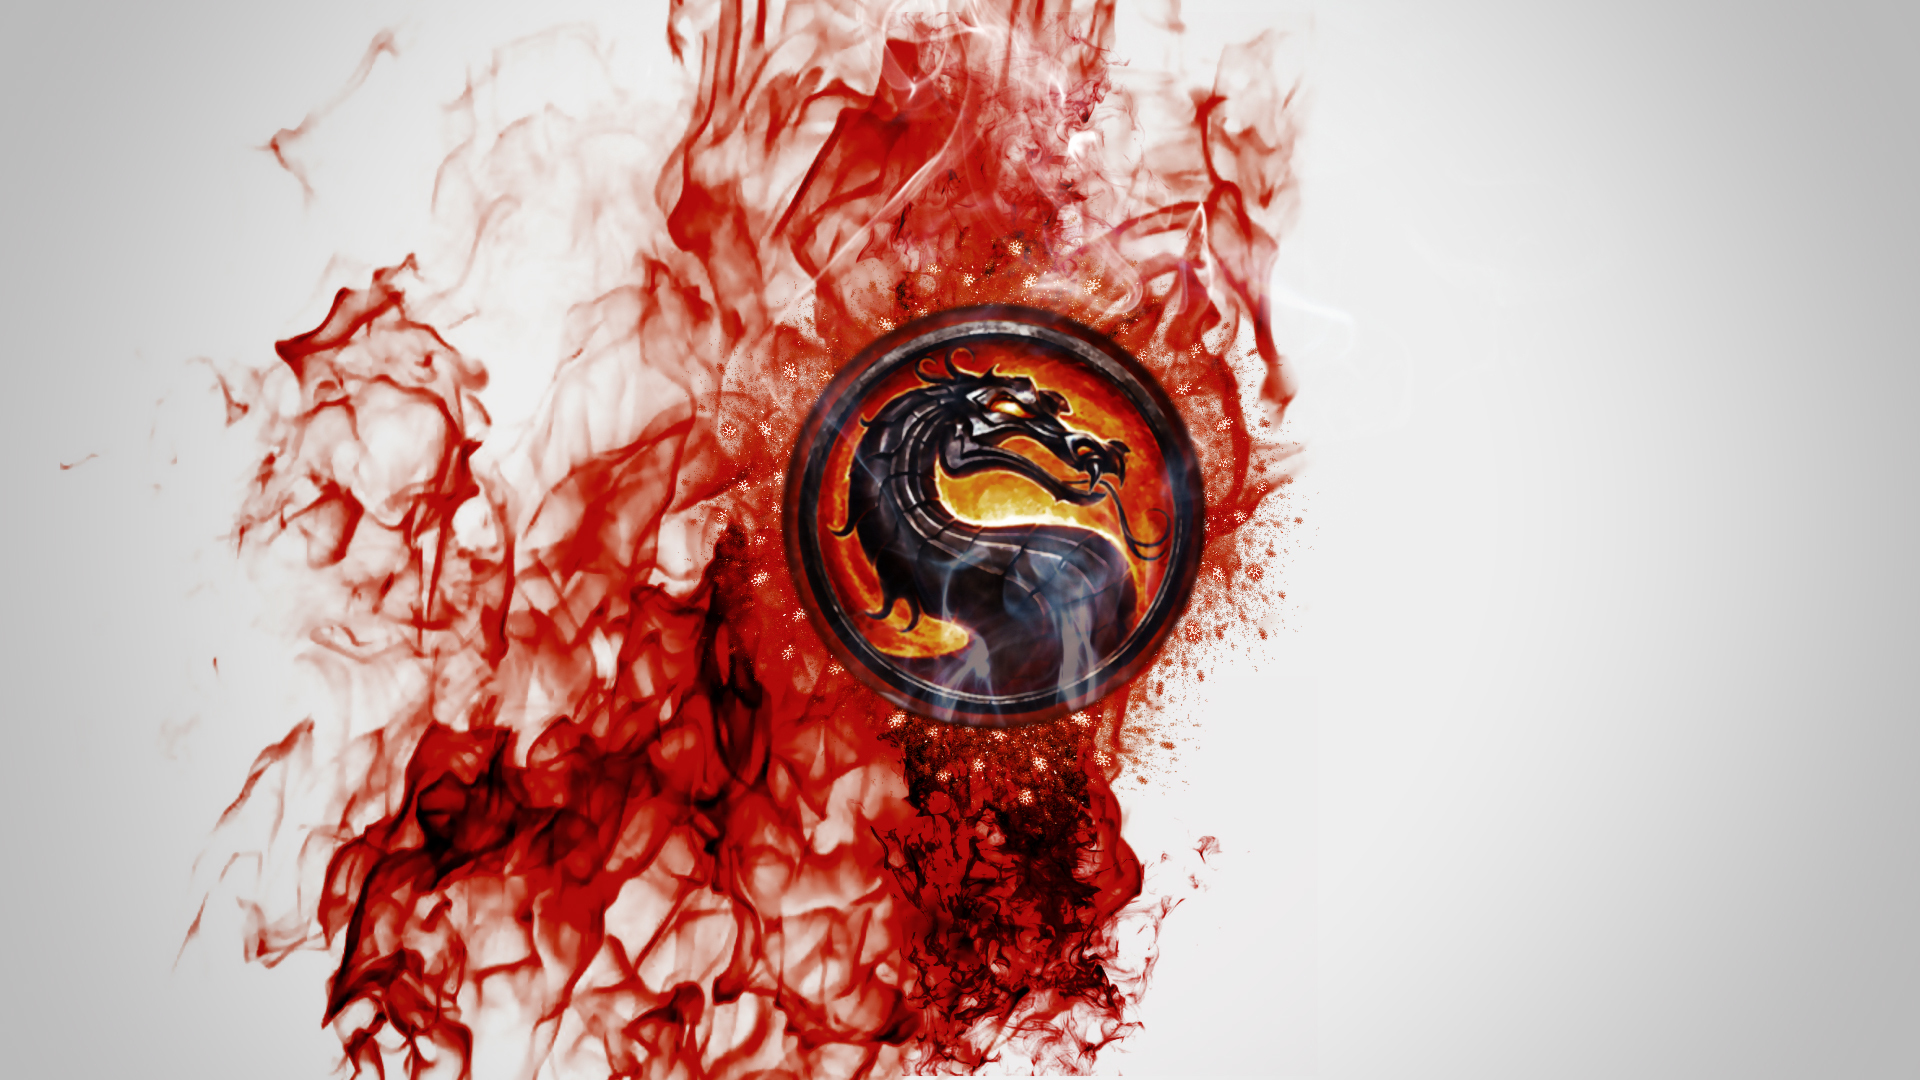 Images Mortal Kombat dragon Blood Logo Emblem vdeo game 1920x1080